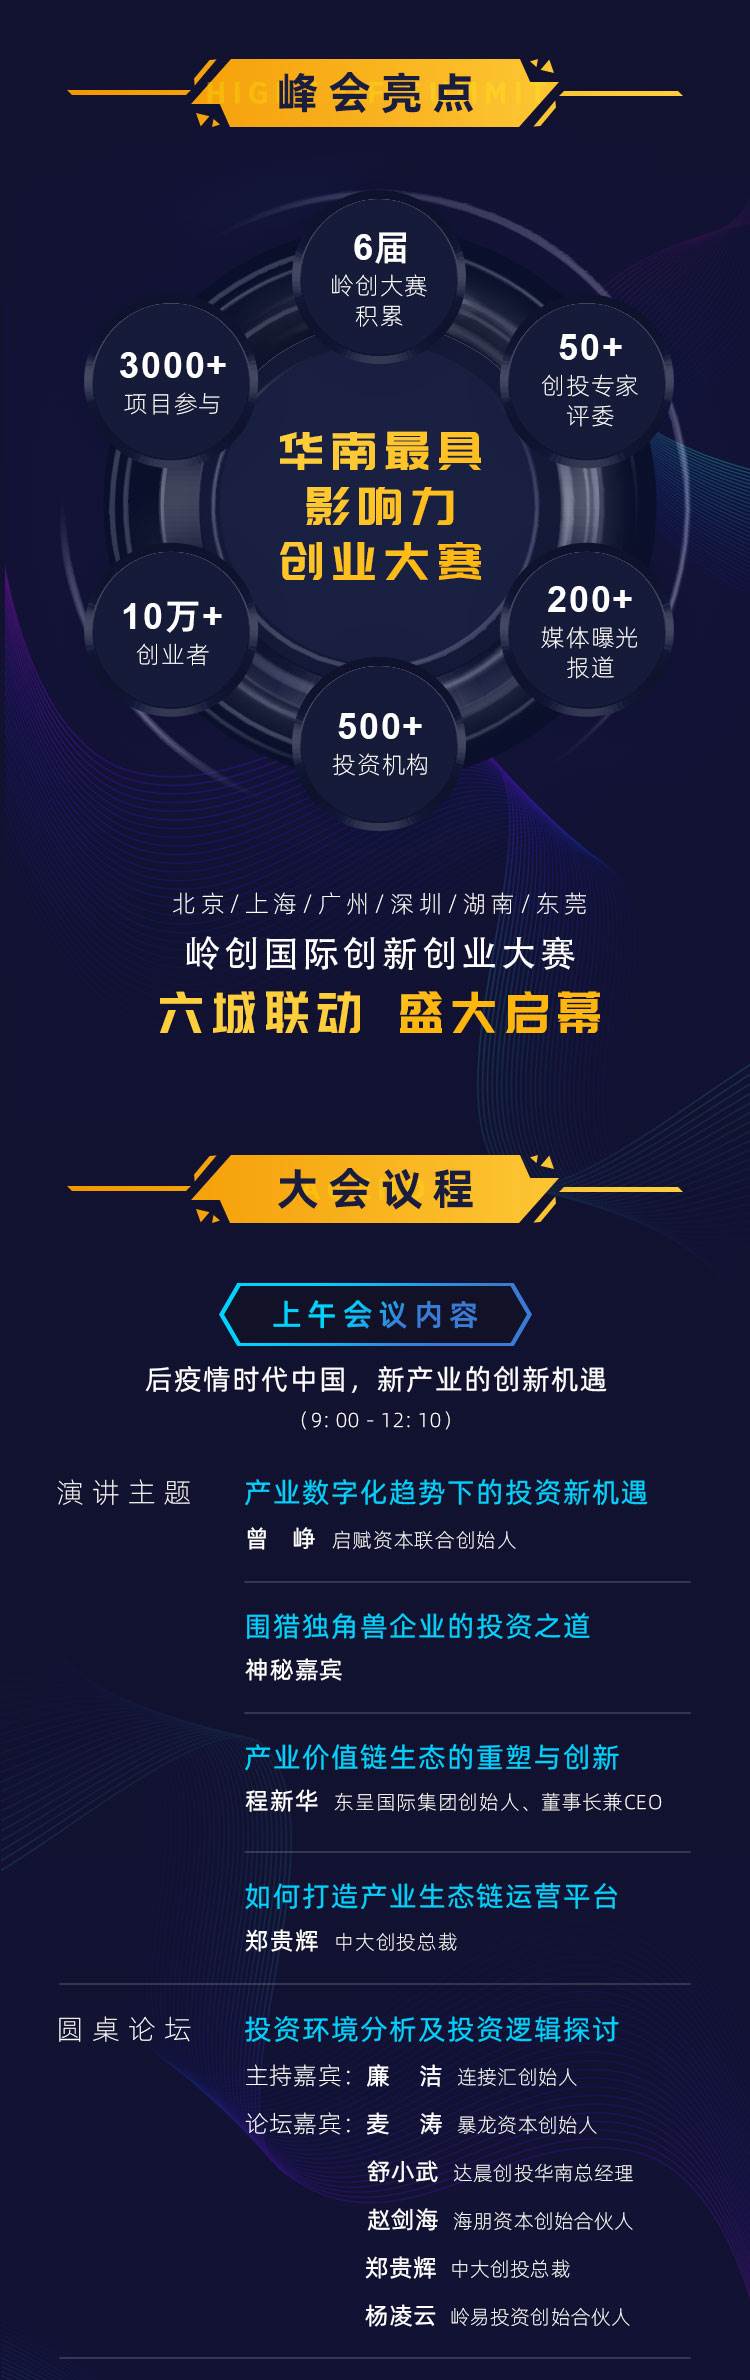 2020中国产业峰会_售票详情v2.1_03.jpg